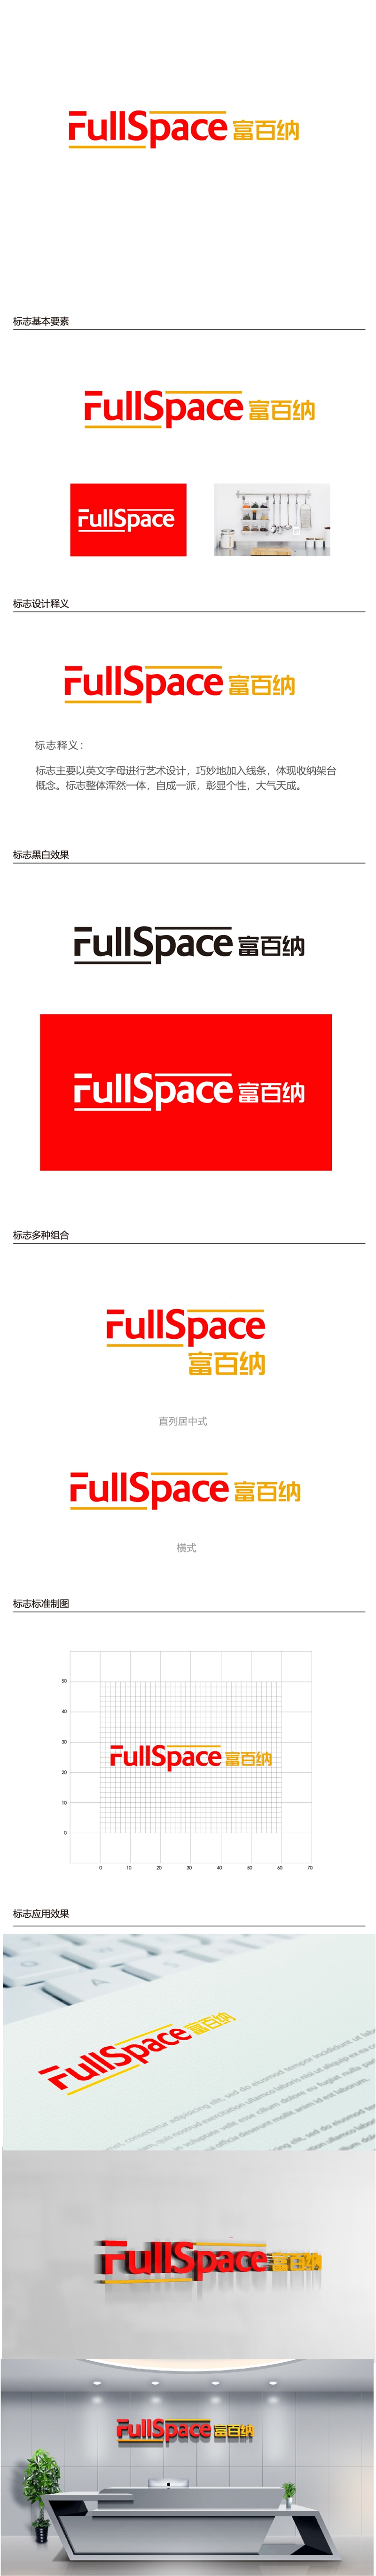 唐国强的FullSpace富百纳logo设计